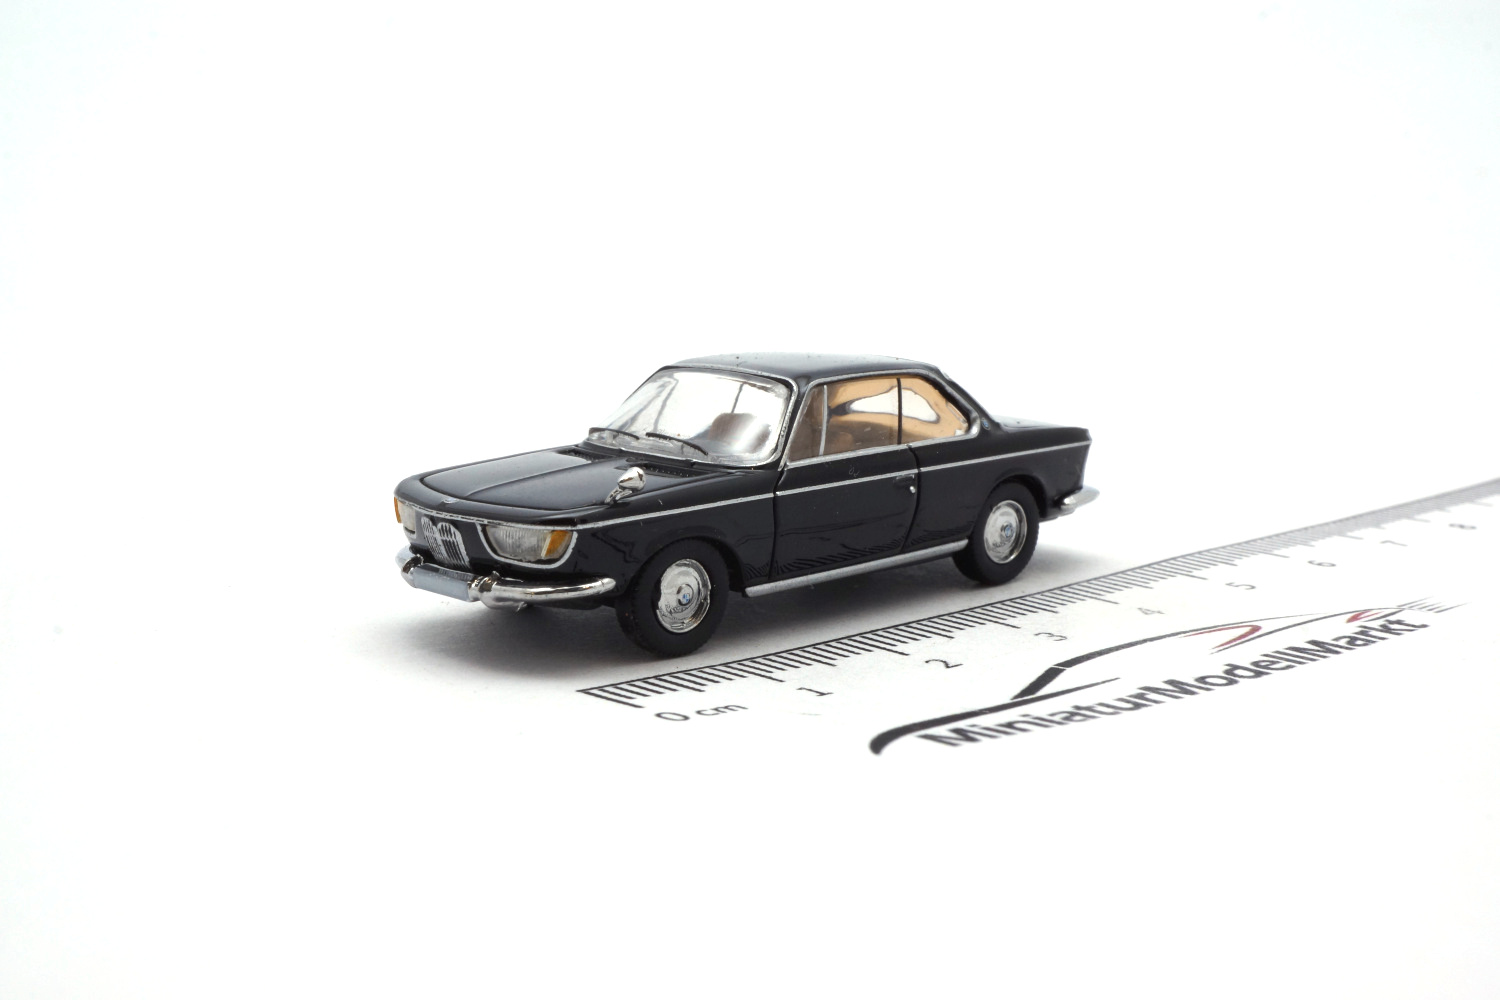 PCX87 PCX870358 BMW 2000 CS, schwarz, 1965 1:87